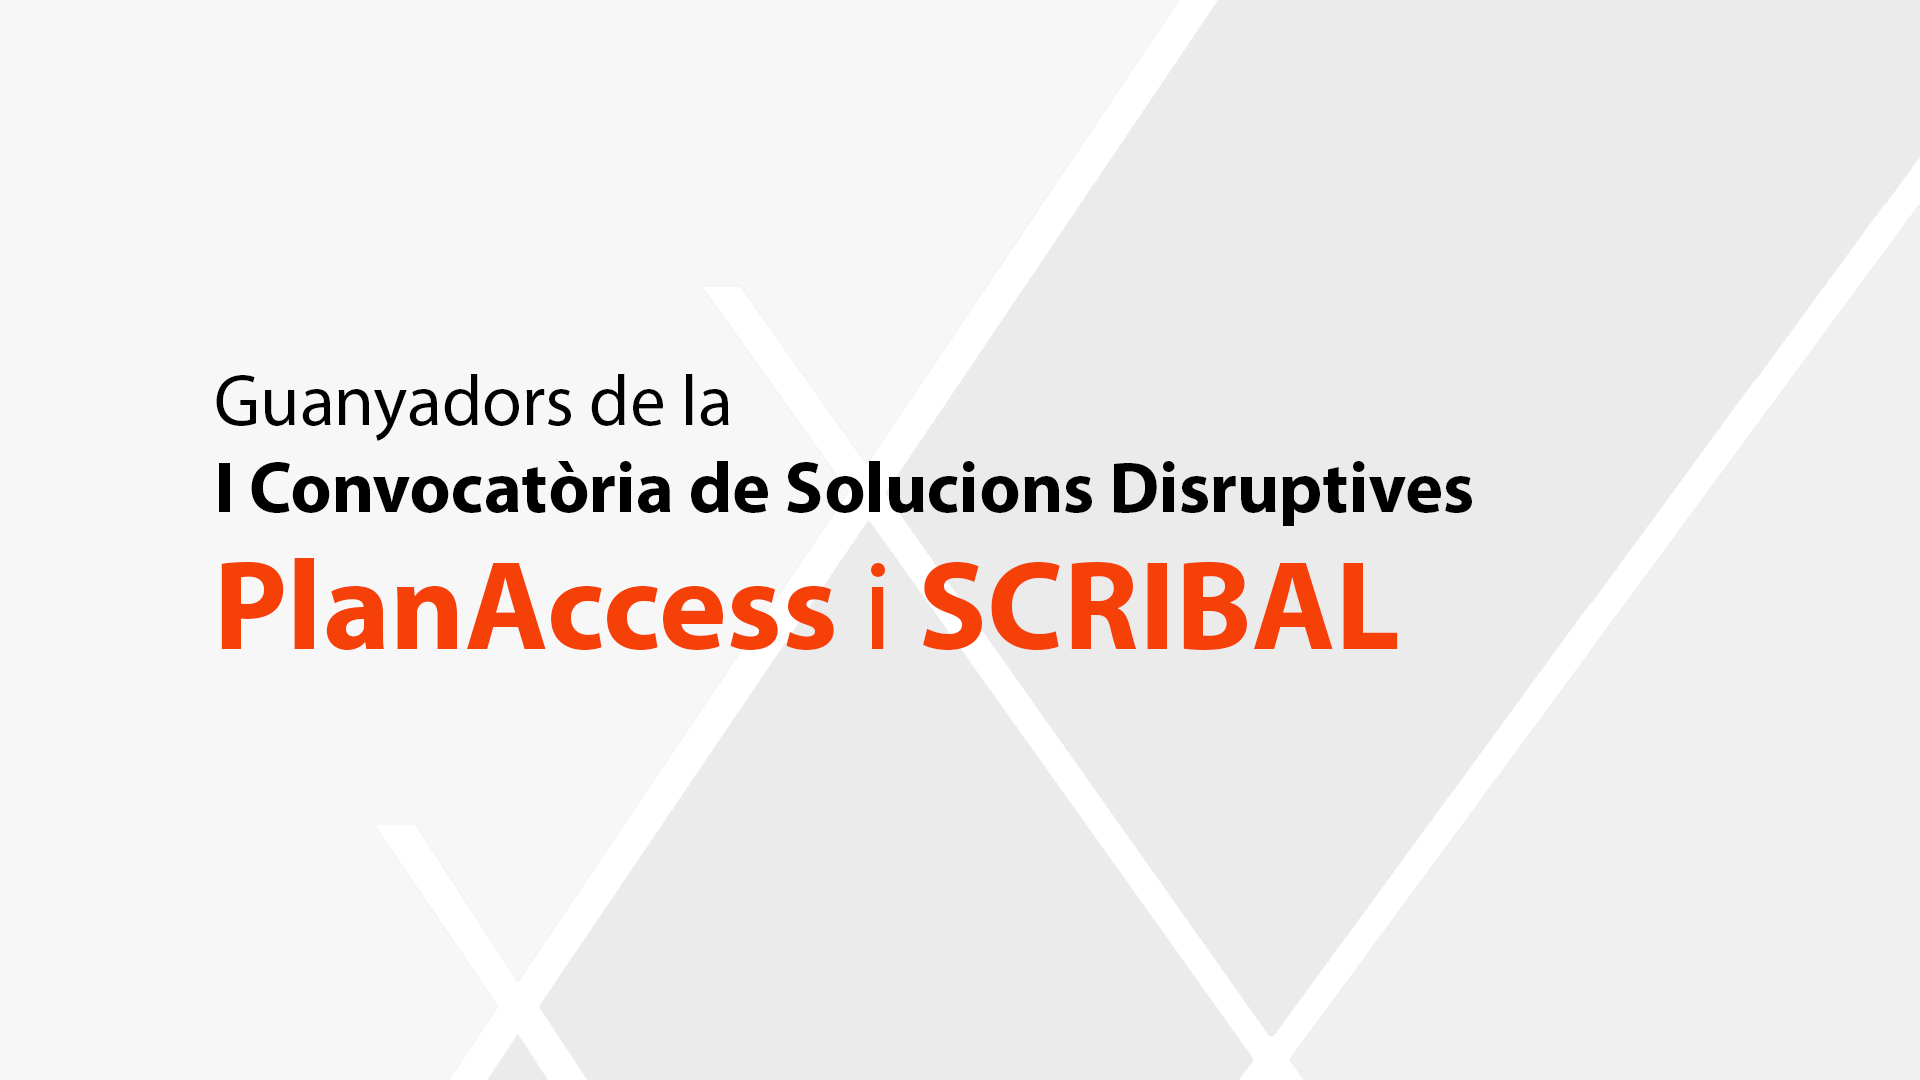 Guanyadors de la primera convocatòria de solucions disruptives: PlanAccess i Scribal.